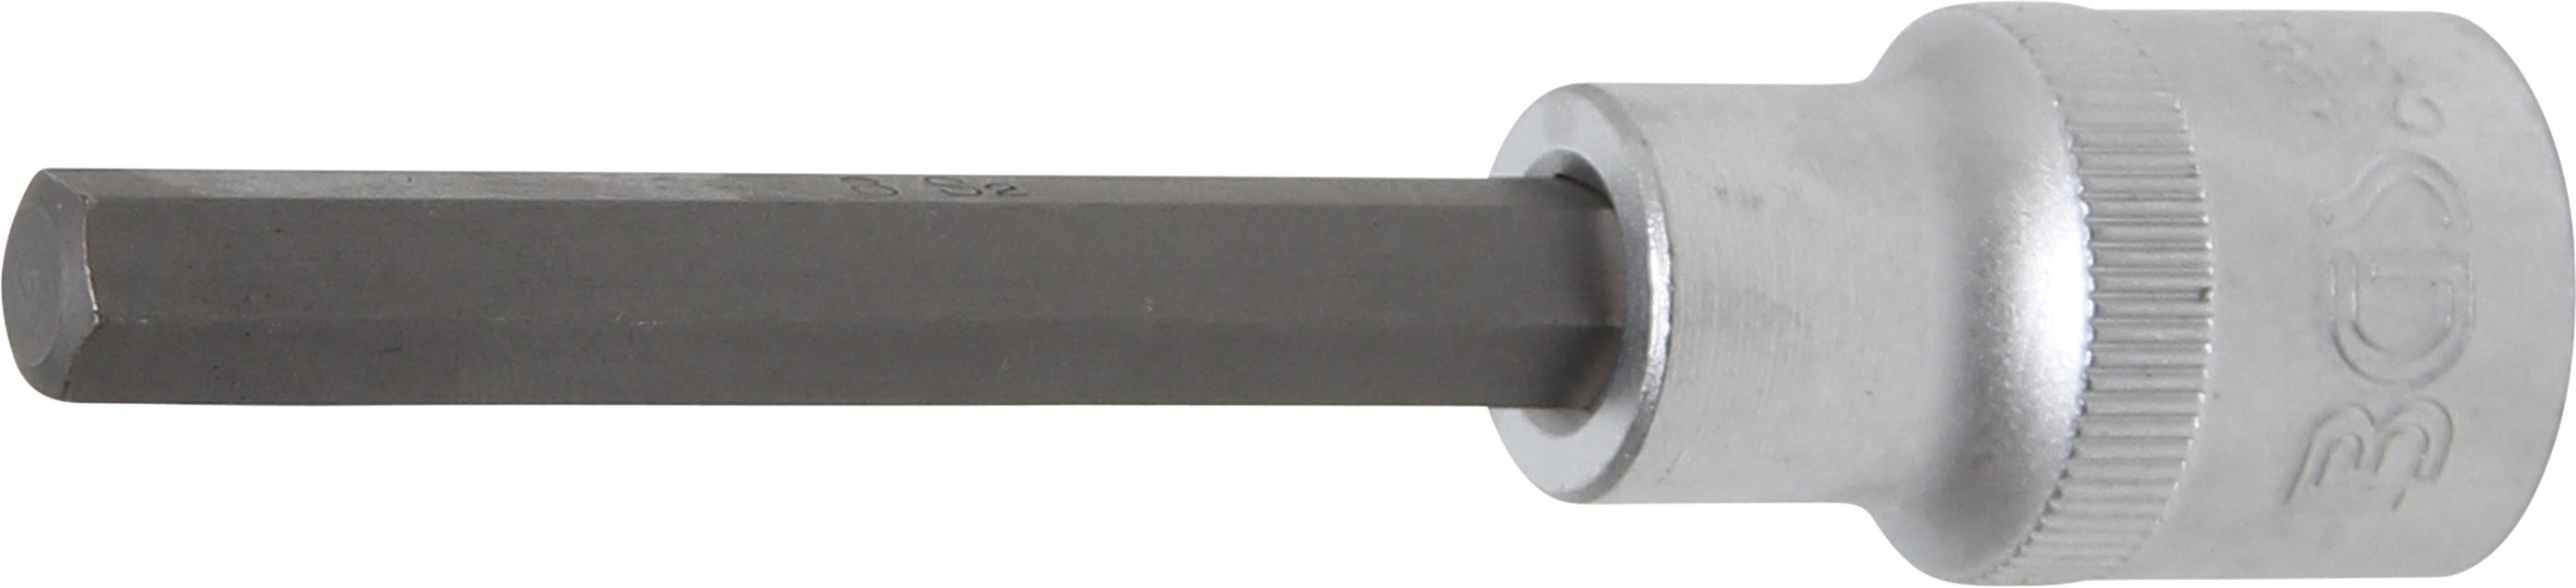 Bit Socket | length 100 mm | 12.5 mm (1/2") Drive | internal Hexagon 8 mm (4263)